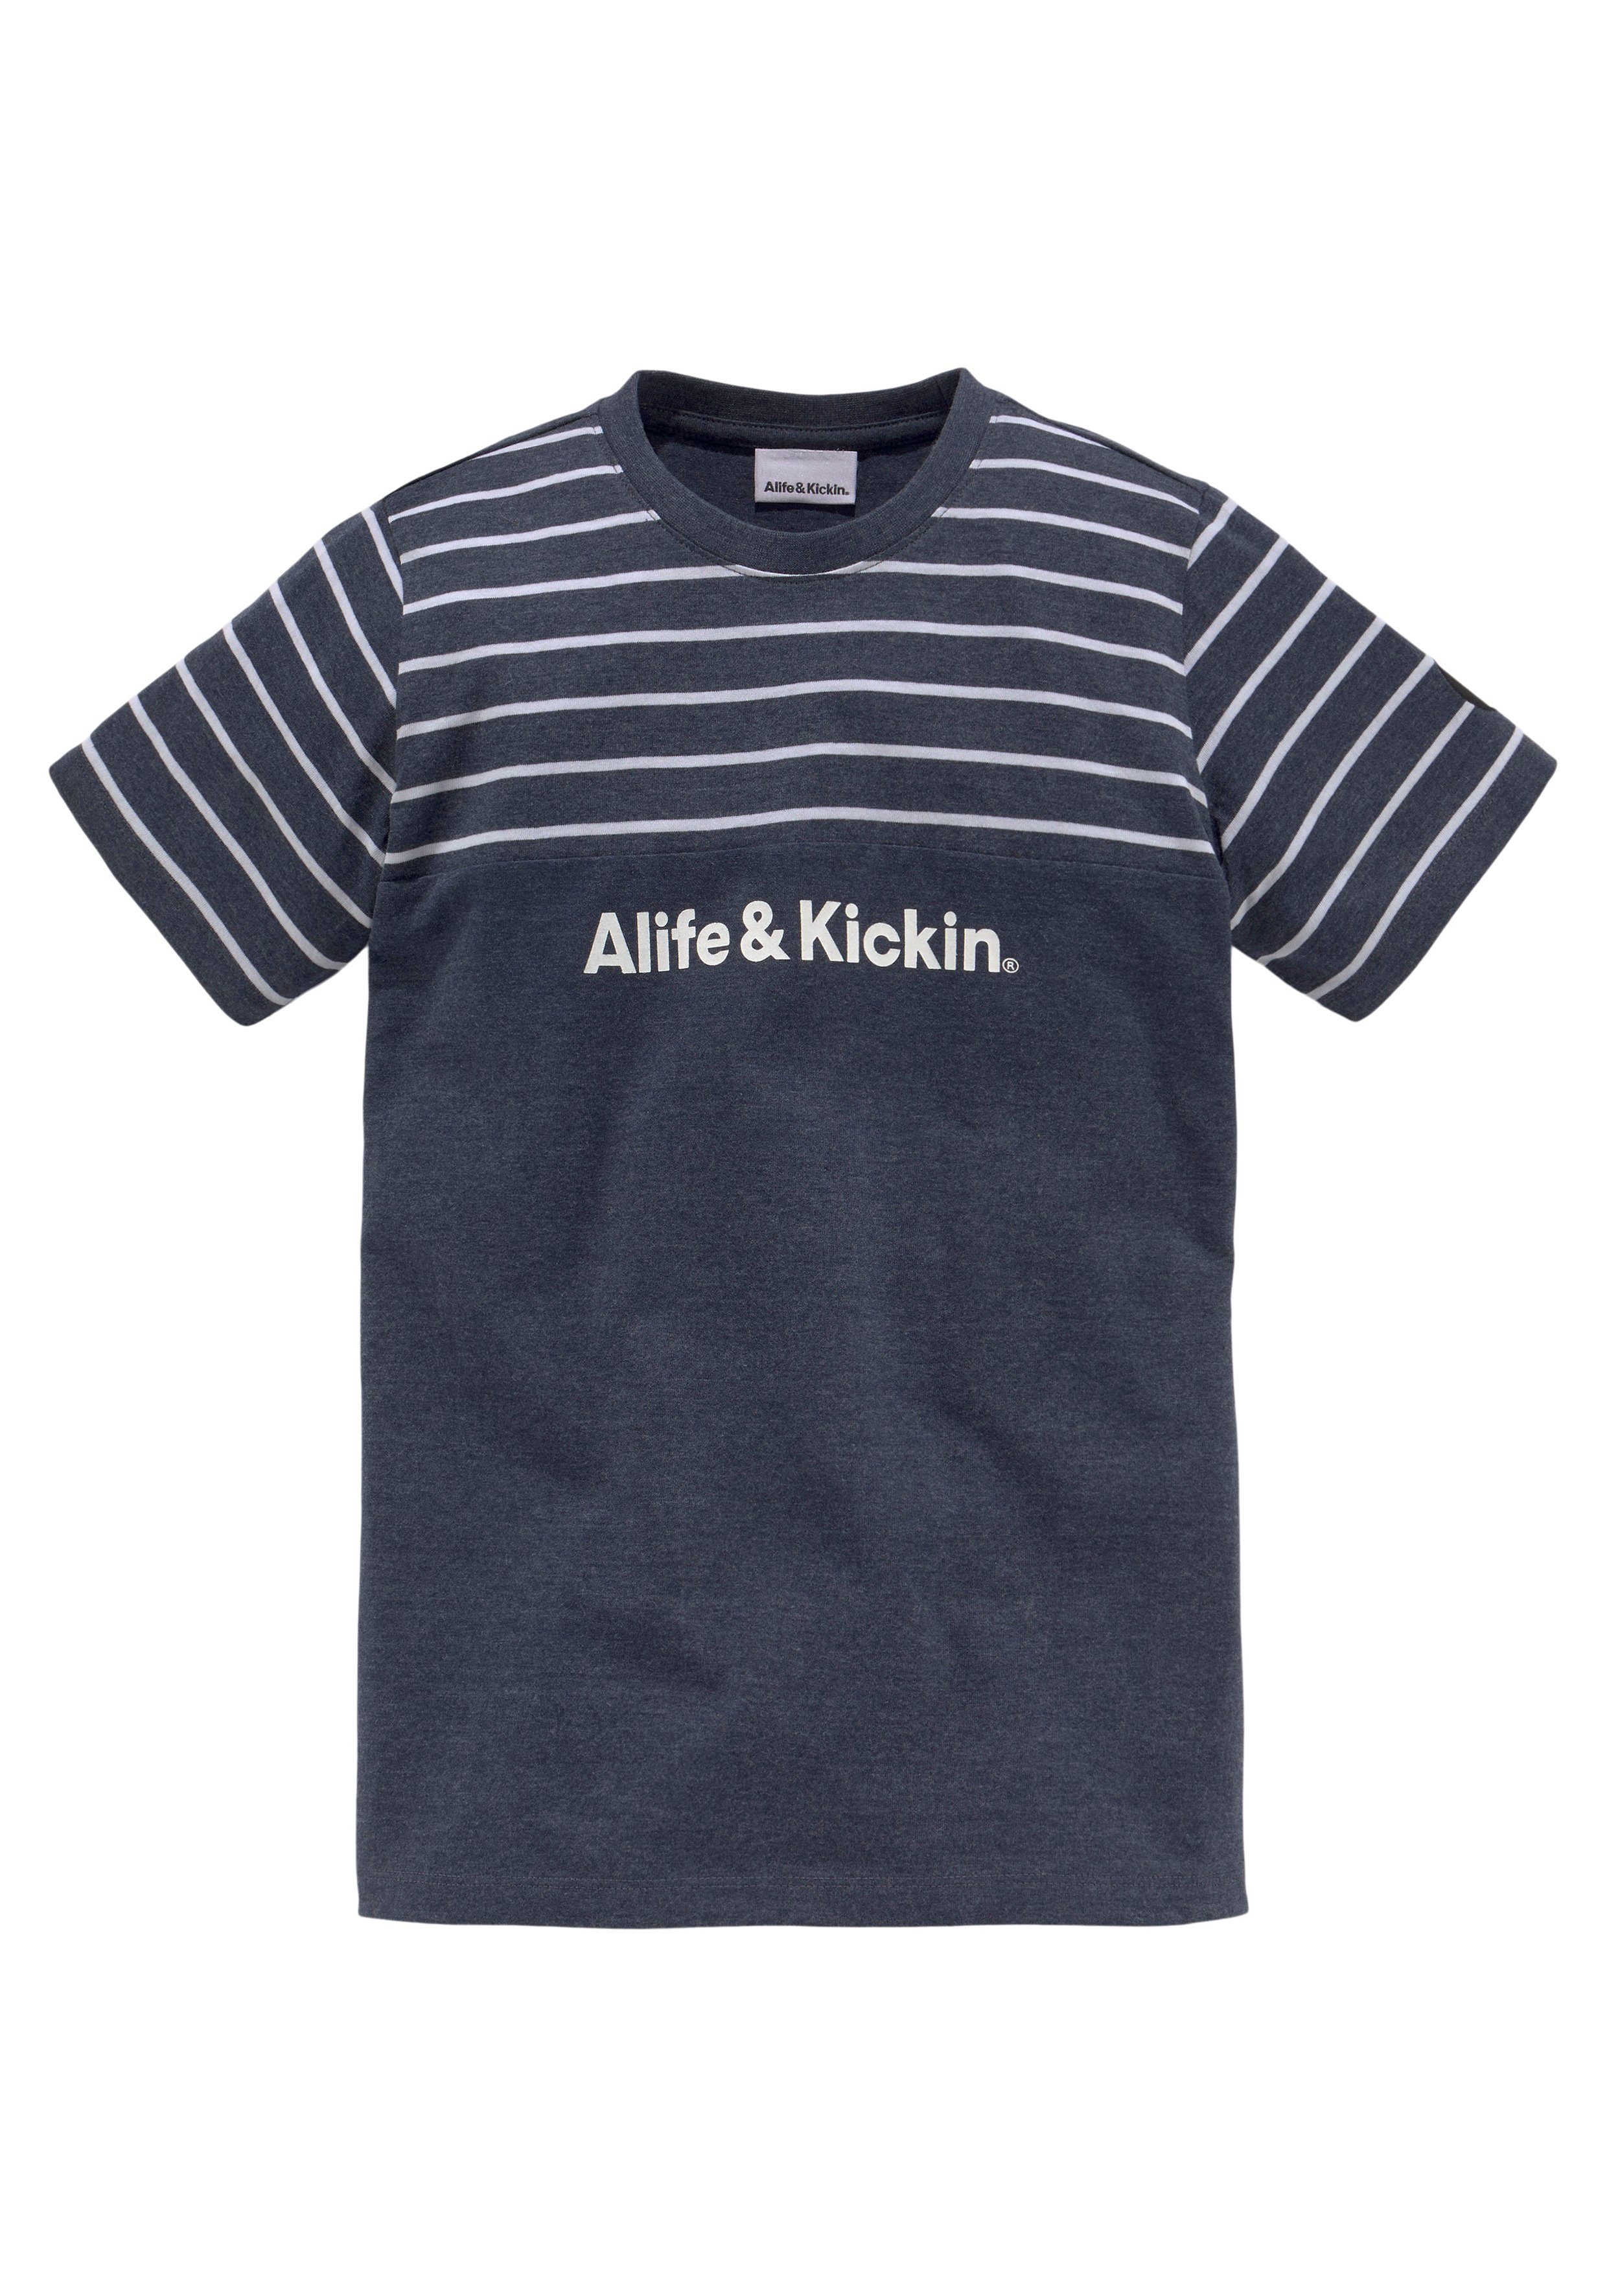 garngefärbten Kickin in Colorblocking Alife melierter NEUE MARKE! und Ringel, & Qualität T-Shirt